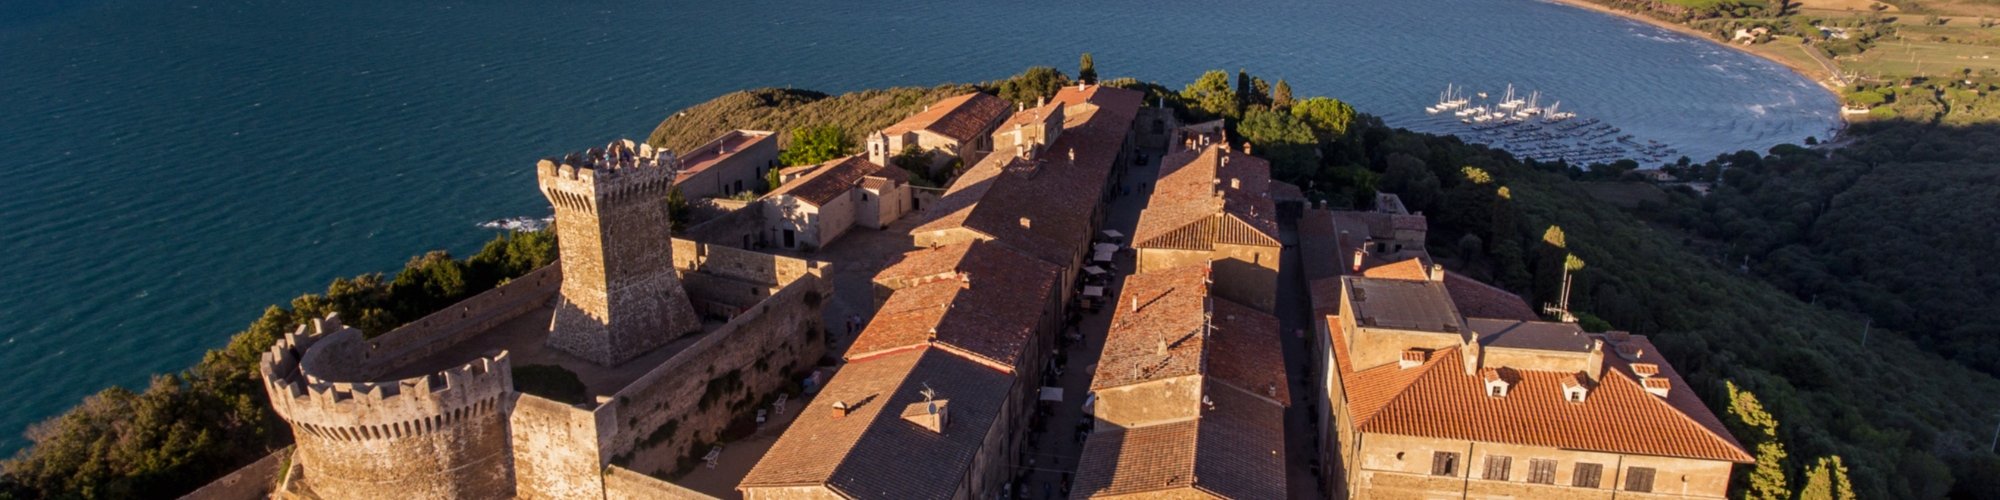 Rocca di Populonia from the drone